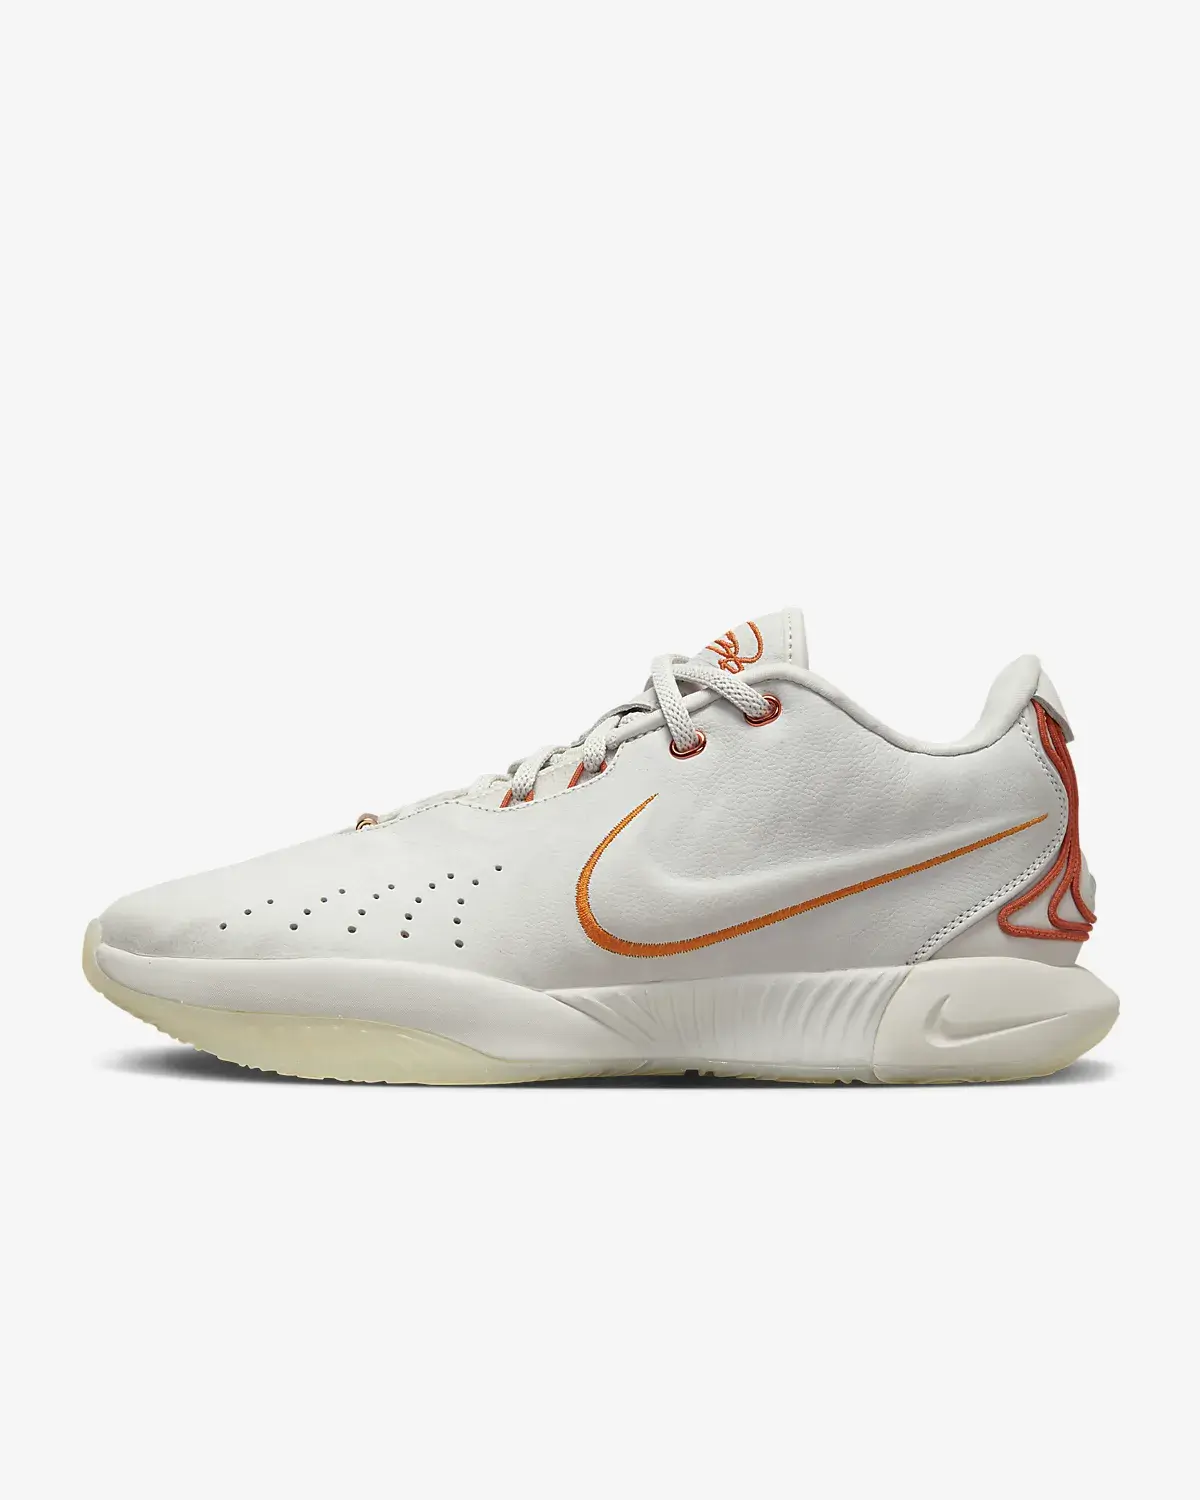 Nike LeBron XXI „Akoya”. 1